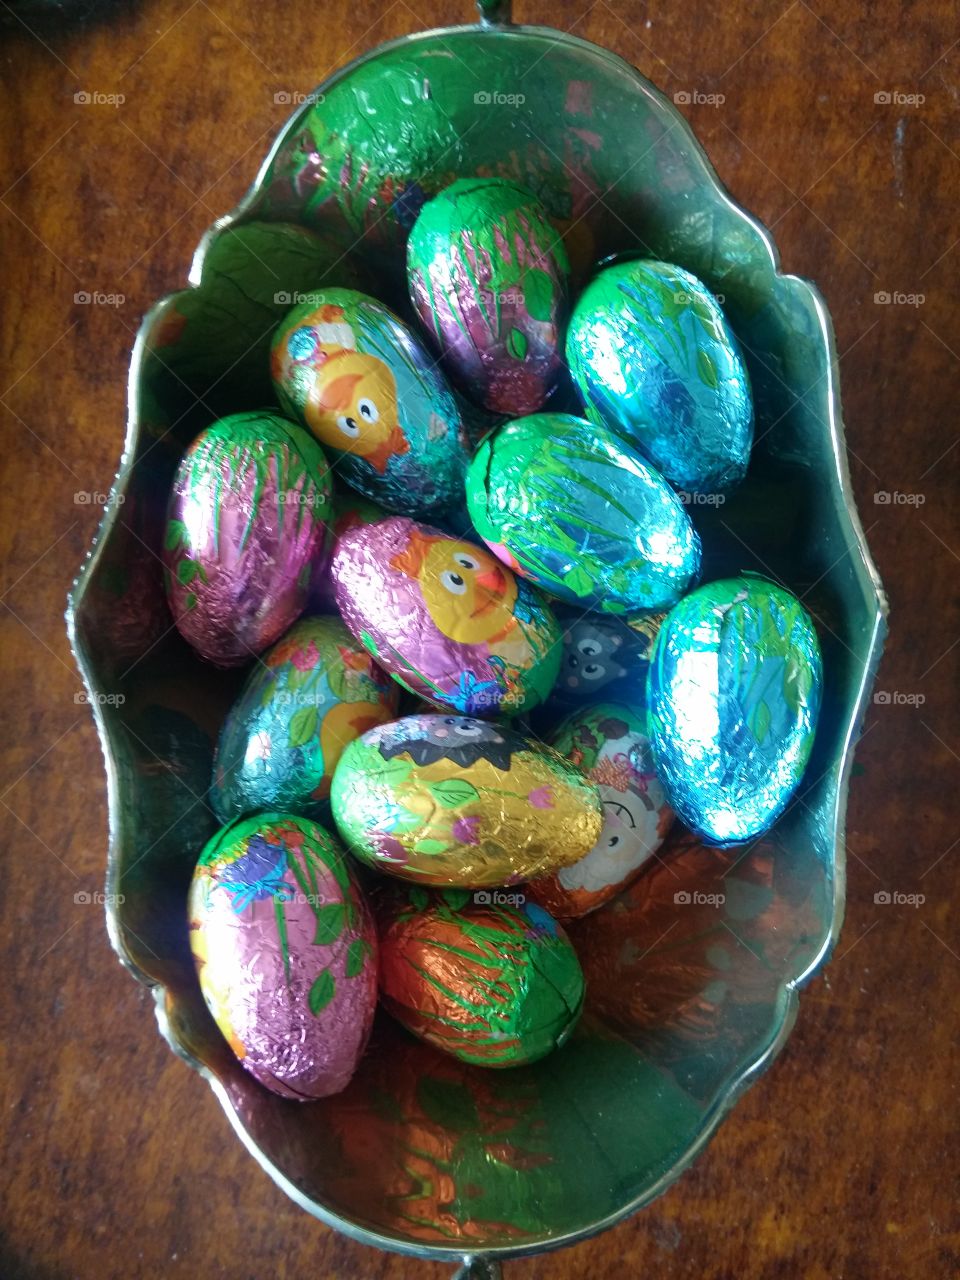 Orthodox Easter eggs